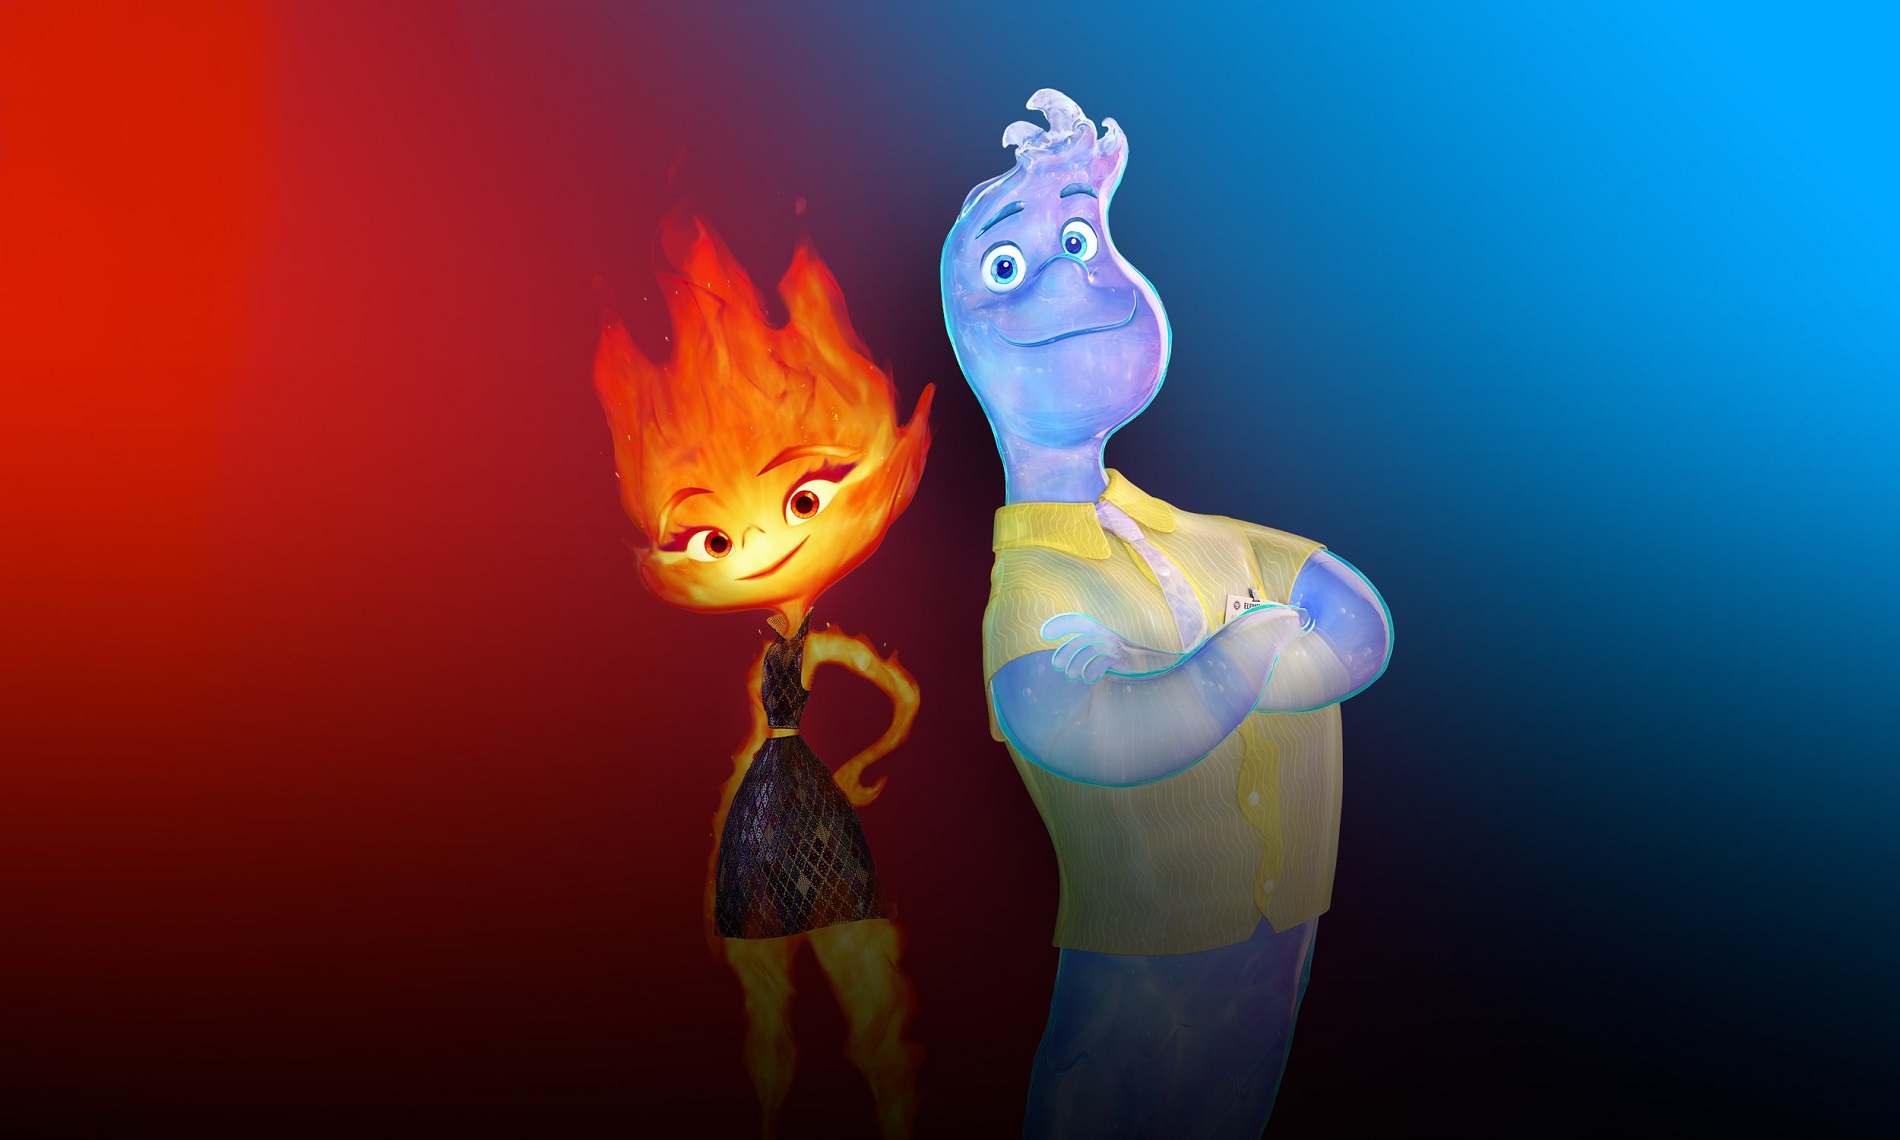 Élémentaire : le retour du Pixar ?